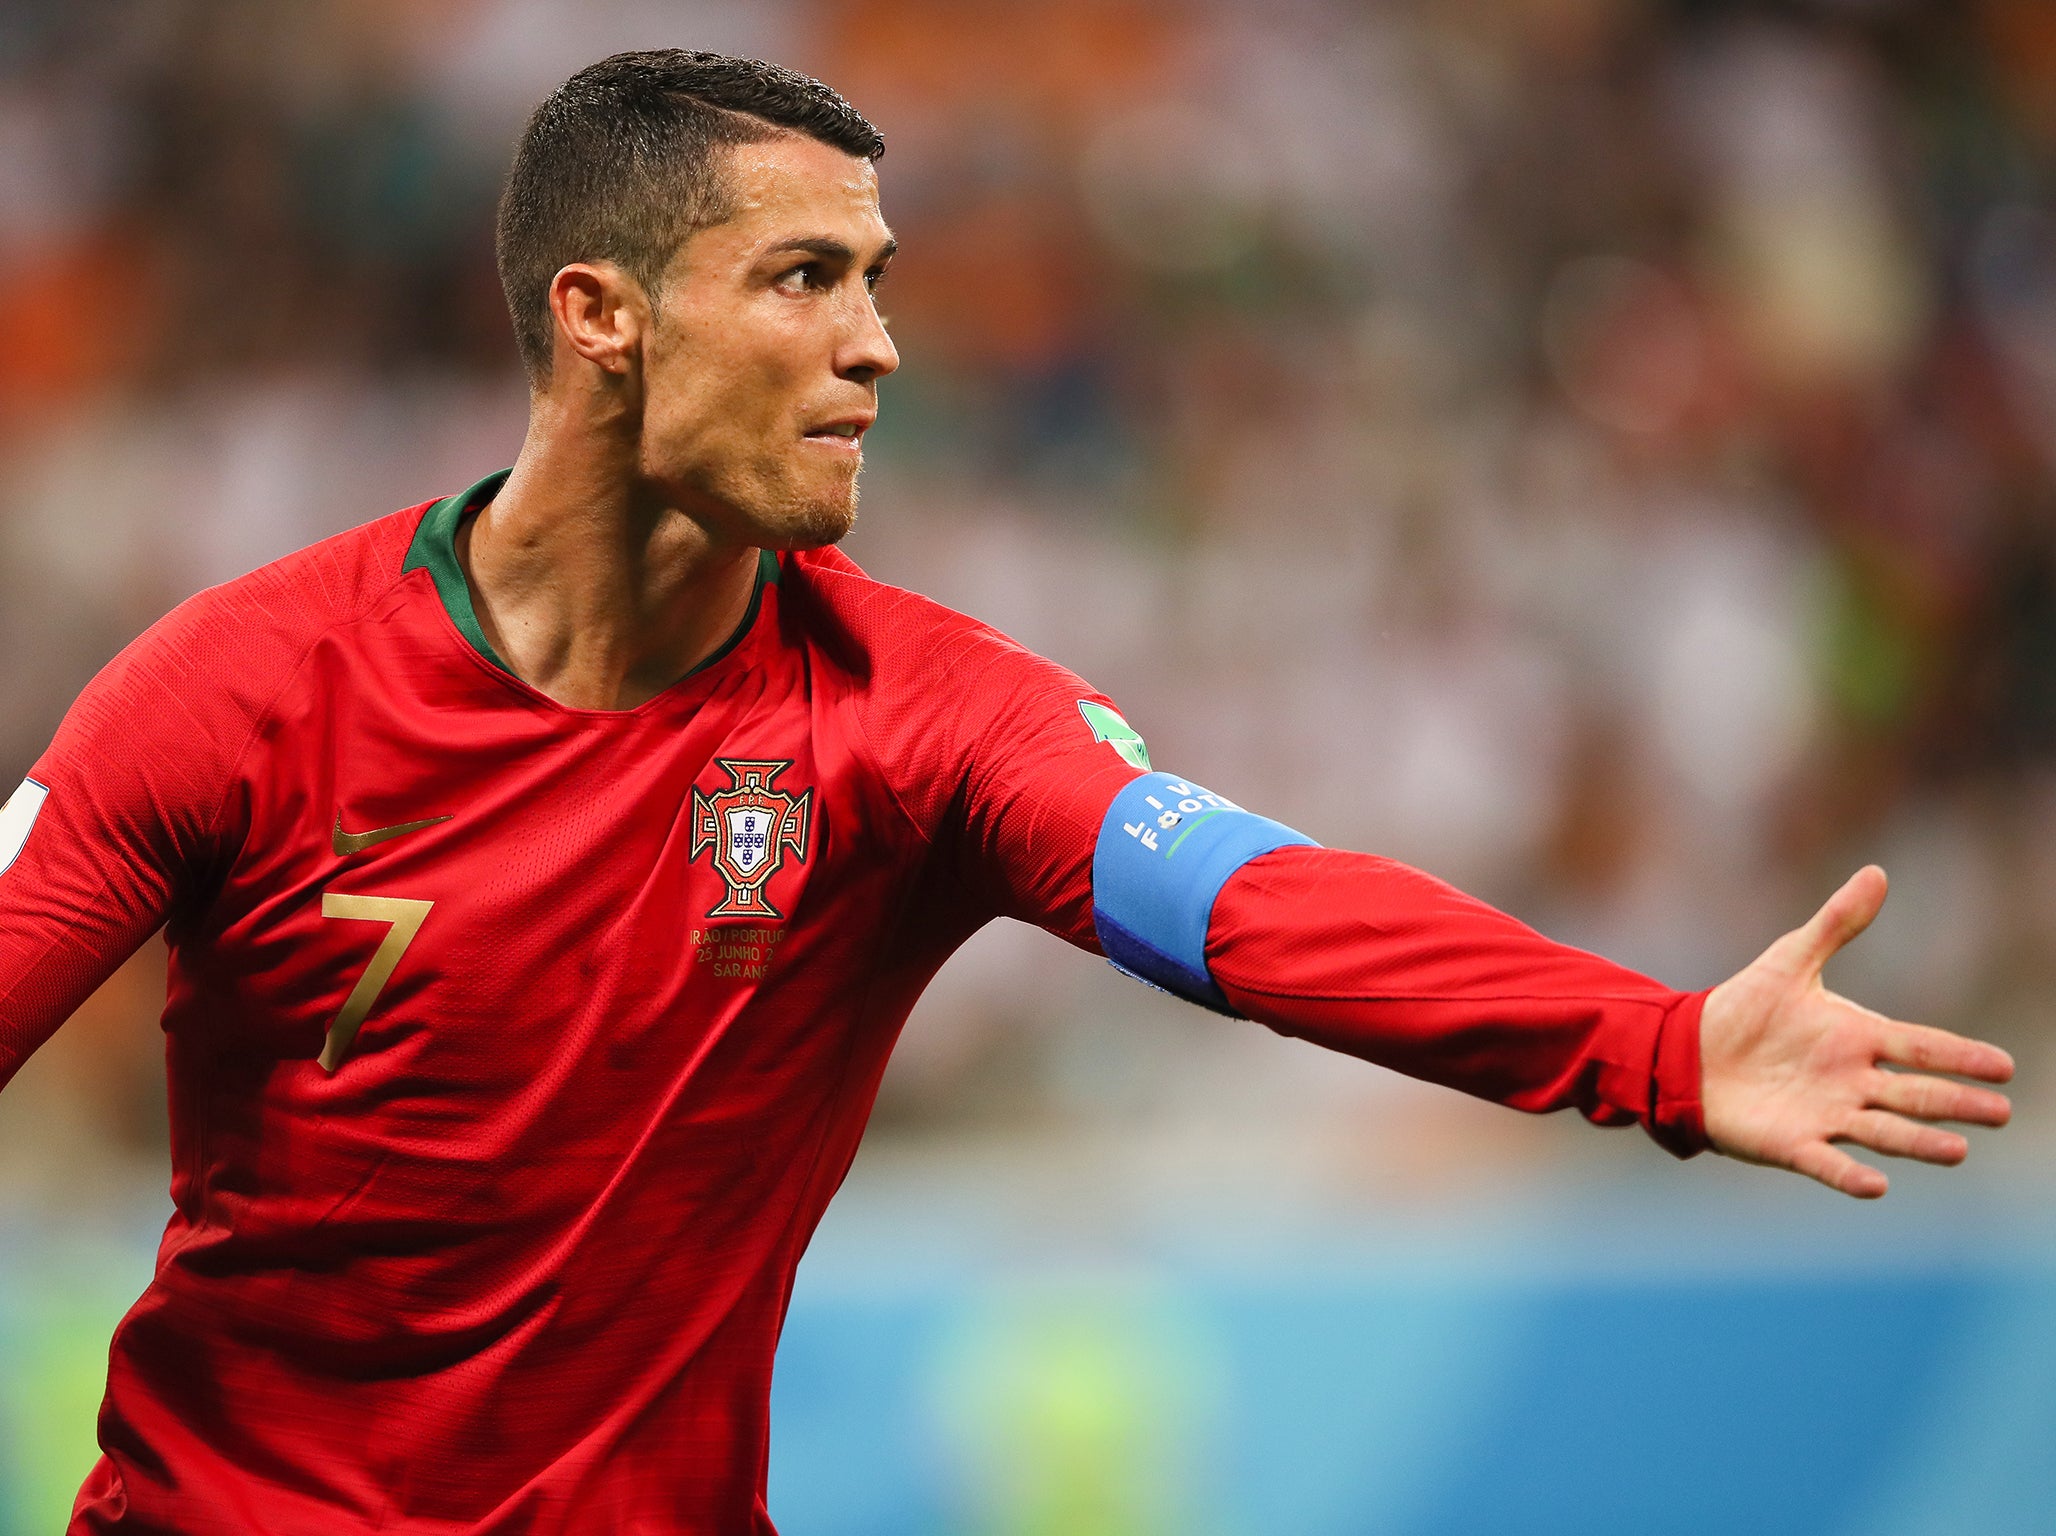 Voice of America - Cristiano Ronaldo of Portugal, left, and Lionel